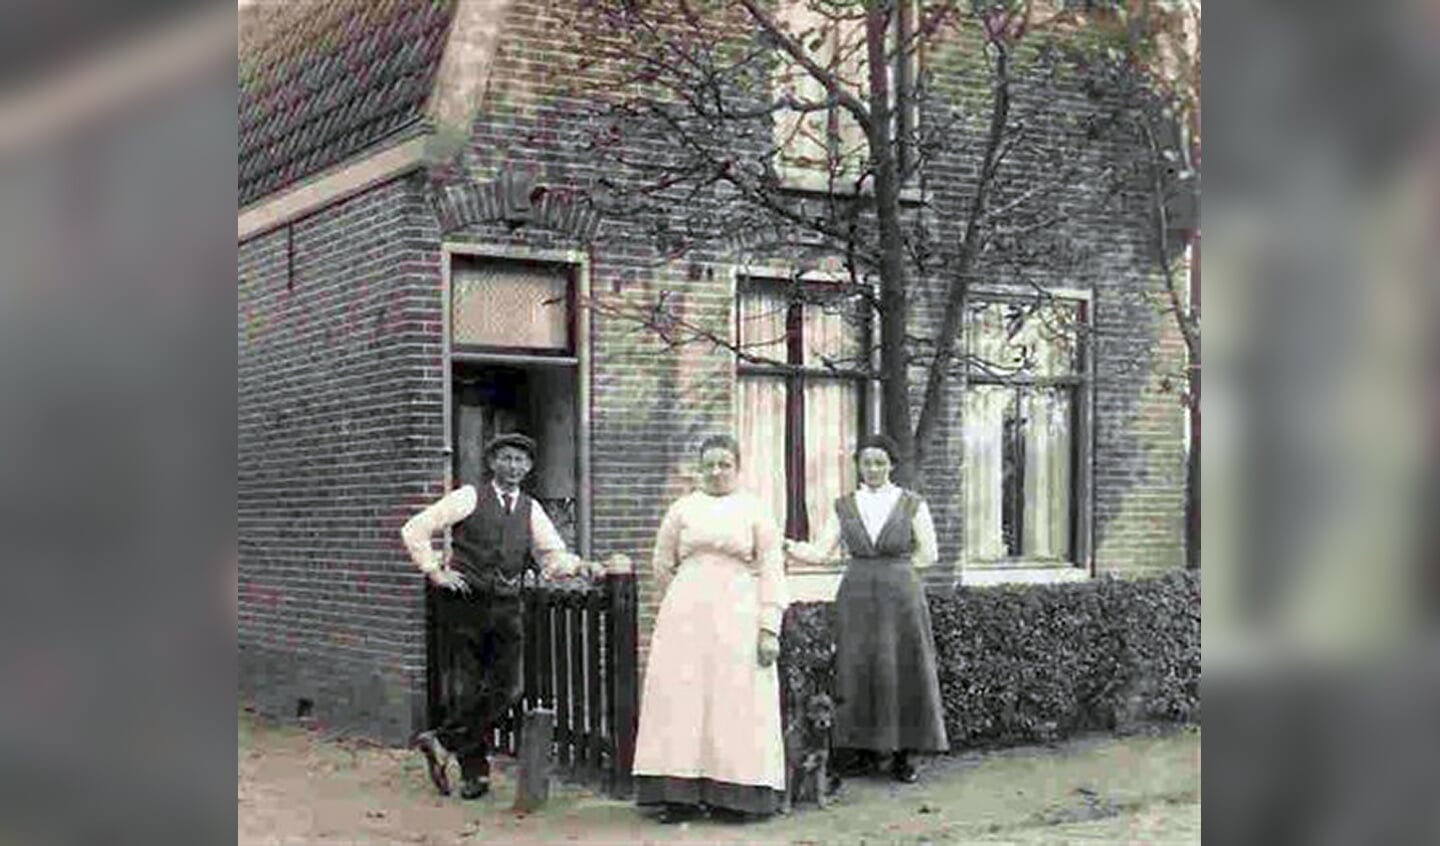 Rechts Maartje, links van haar het echtpaar Schipper in Heemskerk waar zij 'in de kost' was.